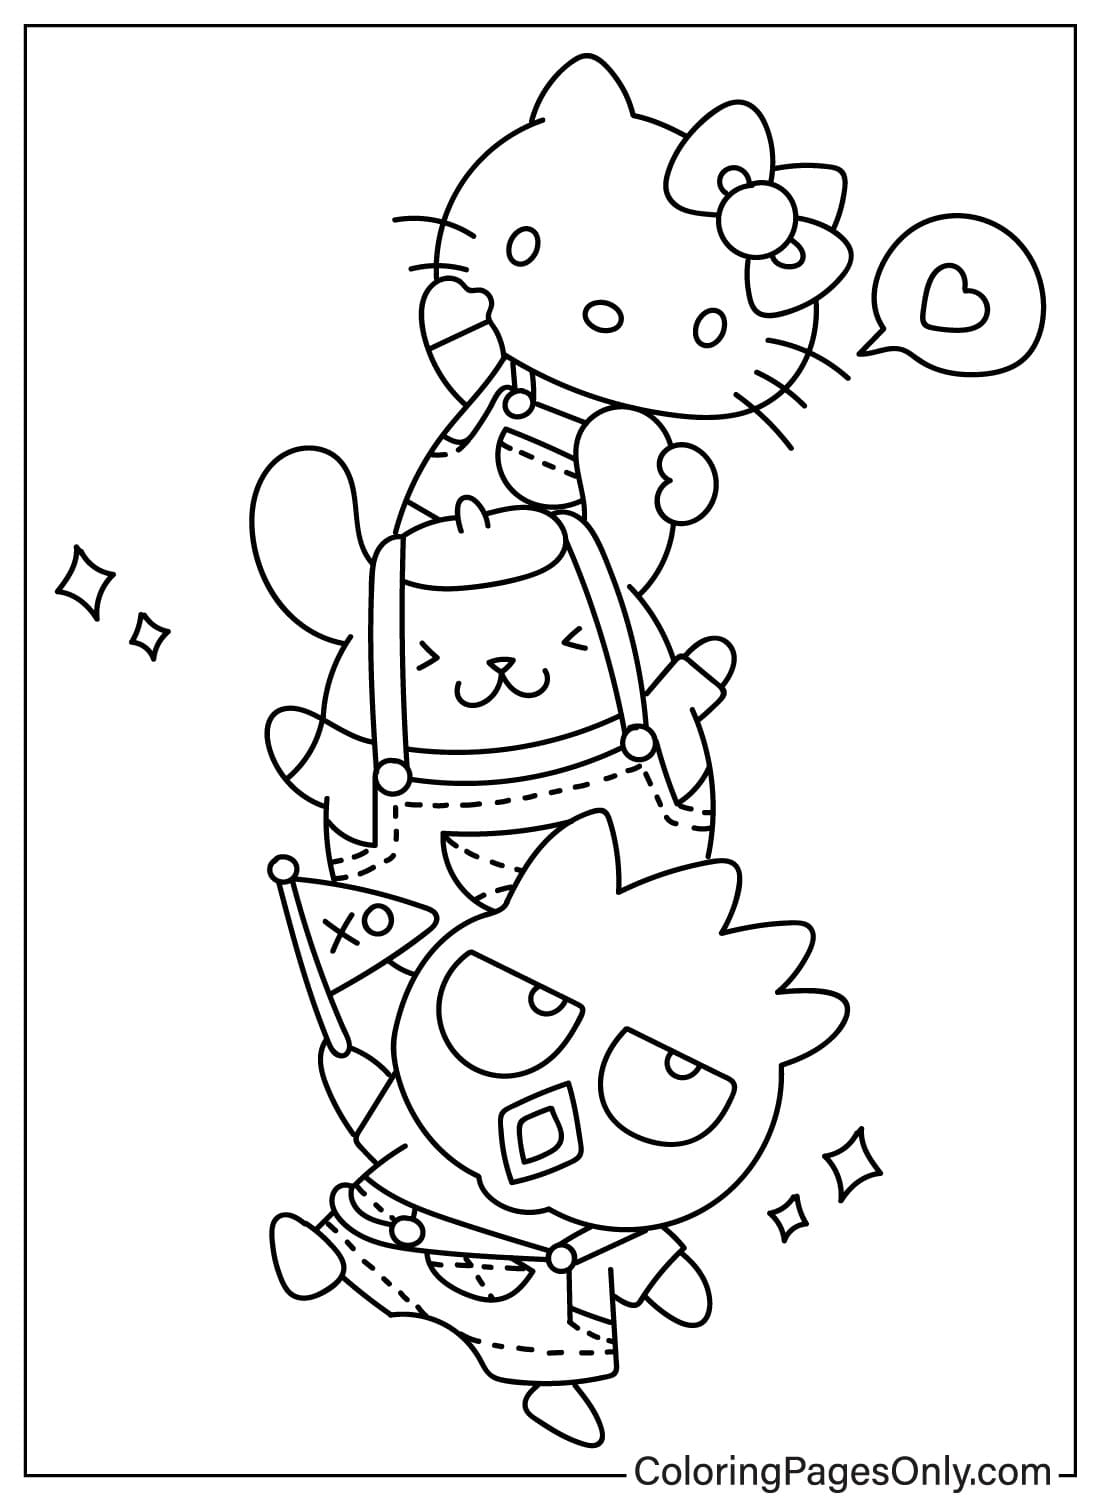 Página para colorear de Badtz-Maru, Pompompurin y Hello Kitty de Pompompurin